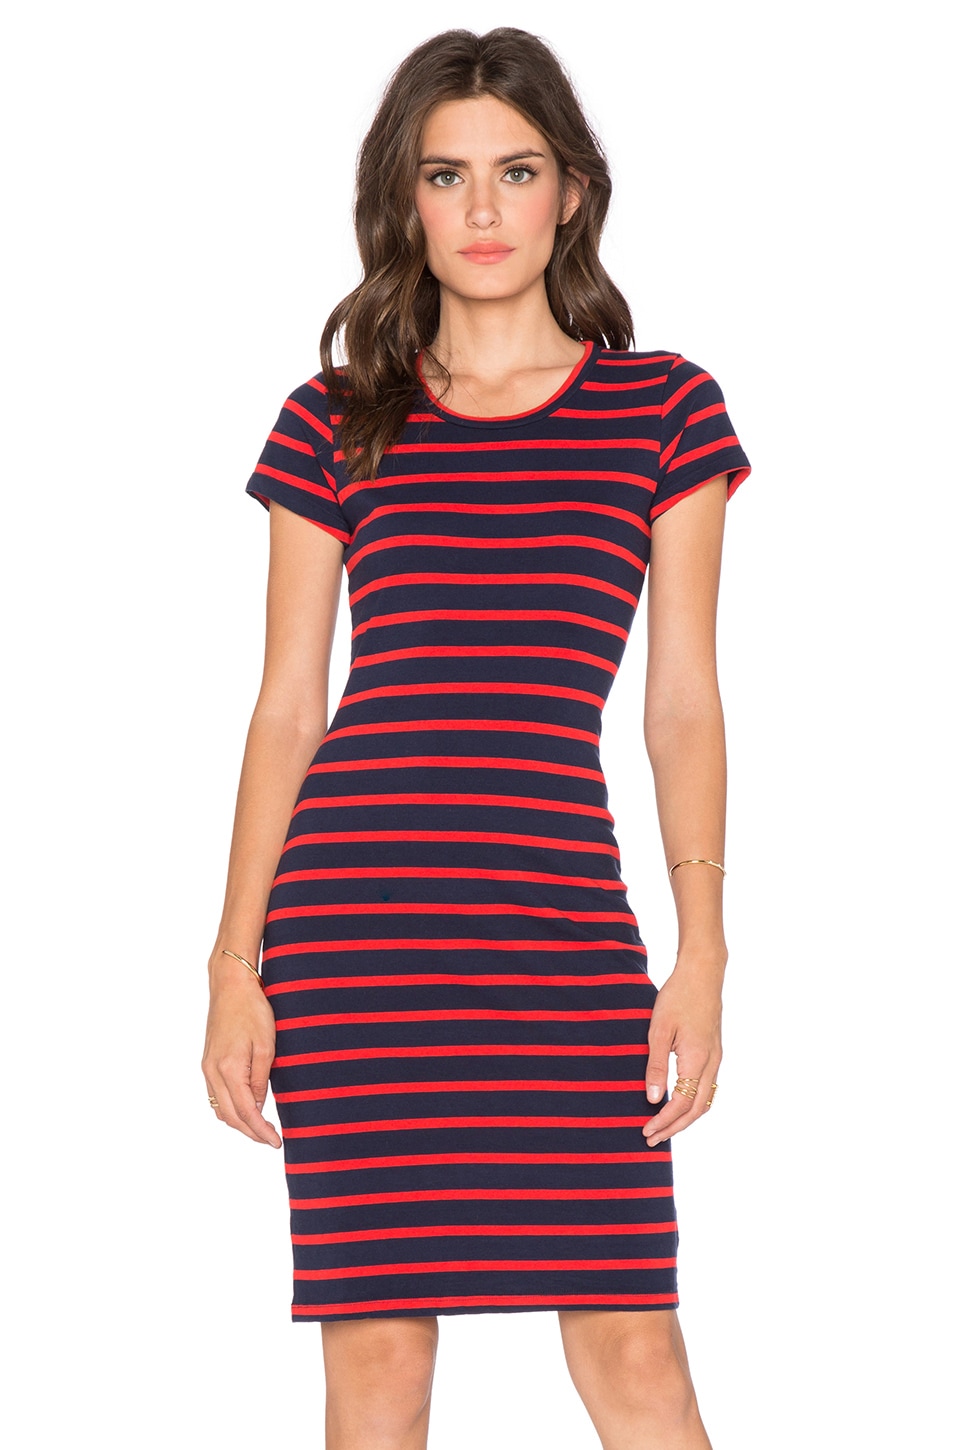 SUNDRY Short Sleeve Stripe Dress in Blue & Red | REVOLVE